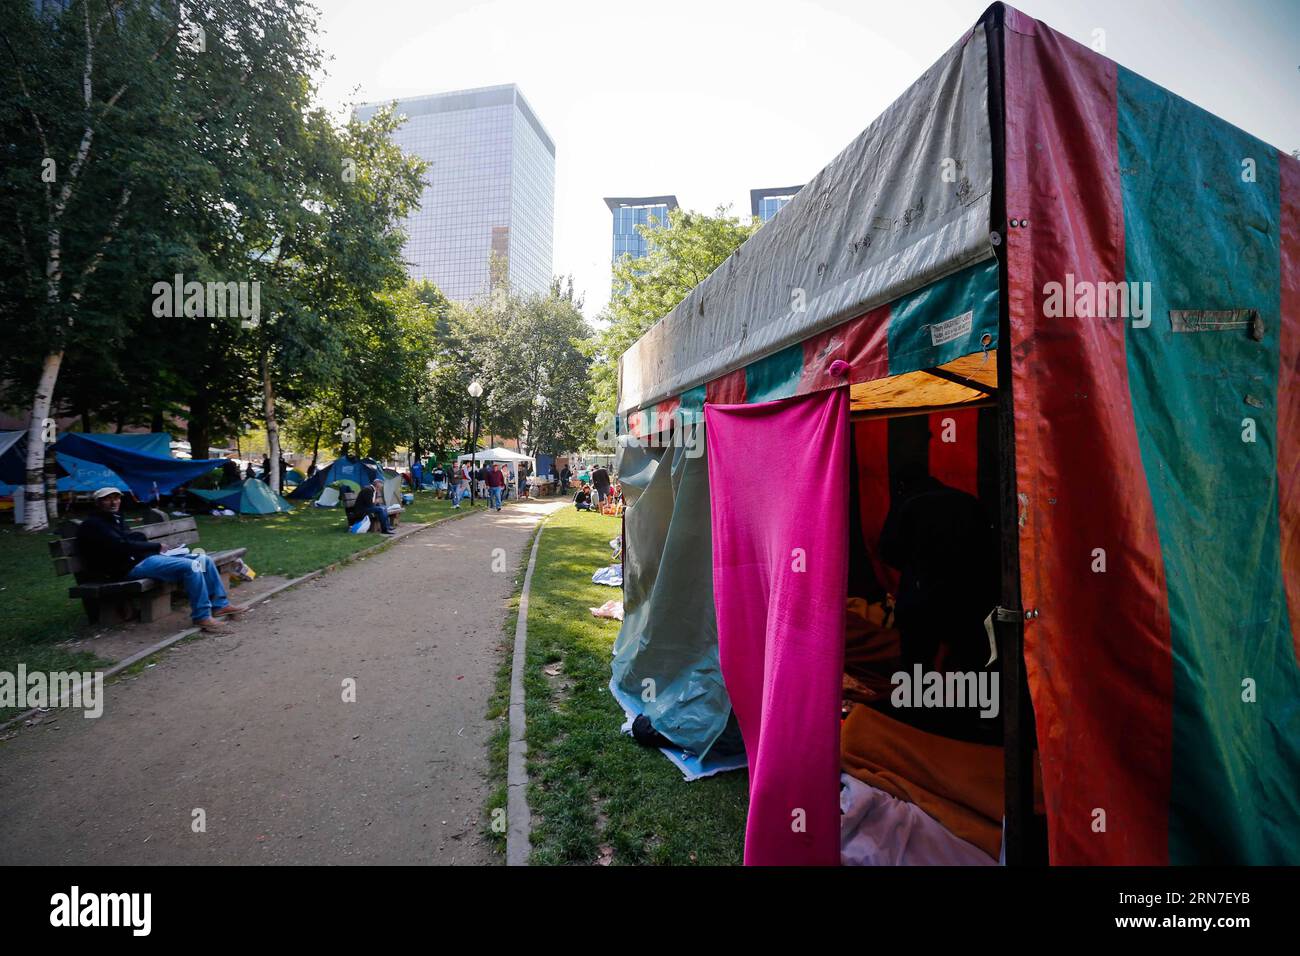 (150903) -- BRUXELLES, 3 septembre 2015 -- des tentes sont vues dans un camp de fortune à l'extérieur du centre d'accueil des migrants à Bruxelles, Belgique, le 3 septembre 2015. Le nombre de réfugiés et de migrants traversant la Méditerranée cette année dépasse désormais les 300 000, selon le HCR, Agence des Nations Unies pour les réfugiés. Zhou Lei) BELGIQUE-EUROPE-MIGRANTS-DEMANDEURS D'ASILE ?? PUBLICATIONxNOTxINxCHN 150903 Bruxelles sept 3 2015 les tentes sont des lacs DANS un camp de fortune devant le Centre d'accueil pour immigrants à Bruxelles Belgique LE 3 2015 septembre, le nombre de réfugiés et de migrants traversant la Méditerranée cette année a dépassé 300 Banque D'Images